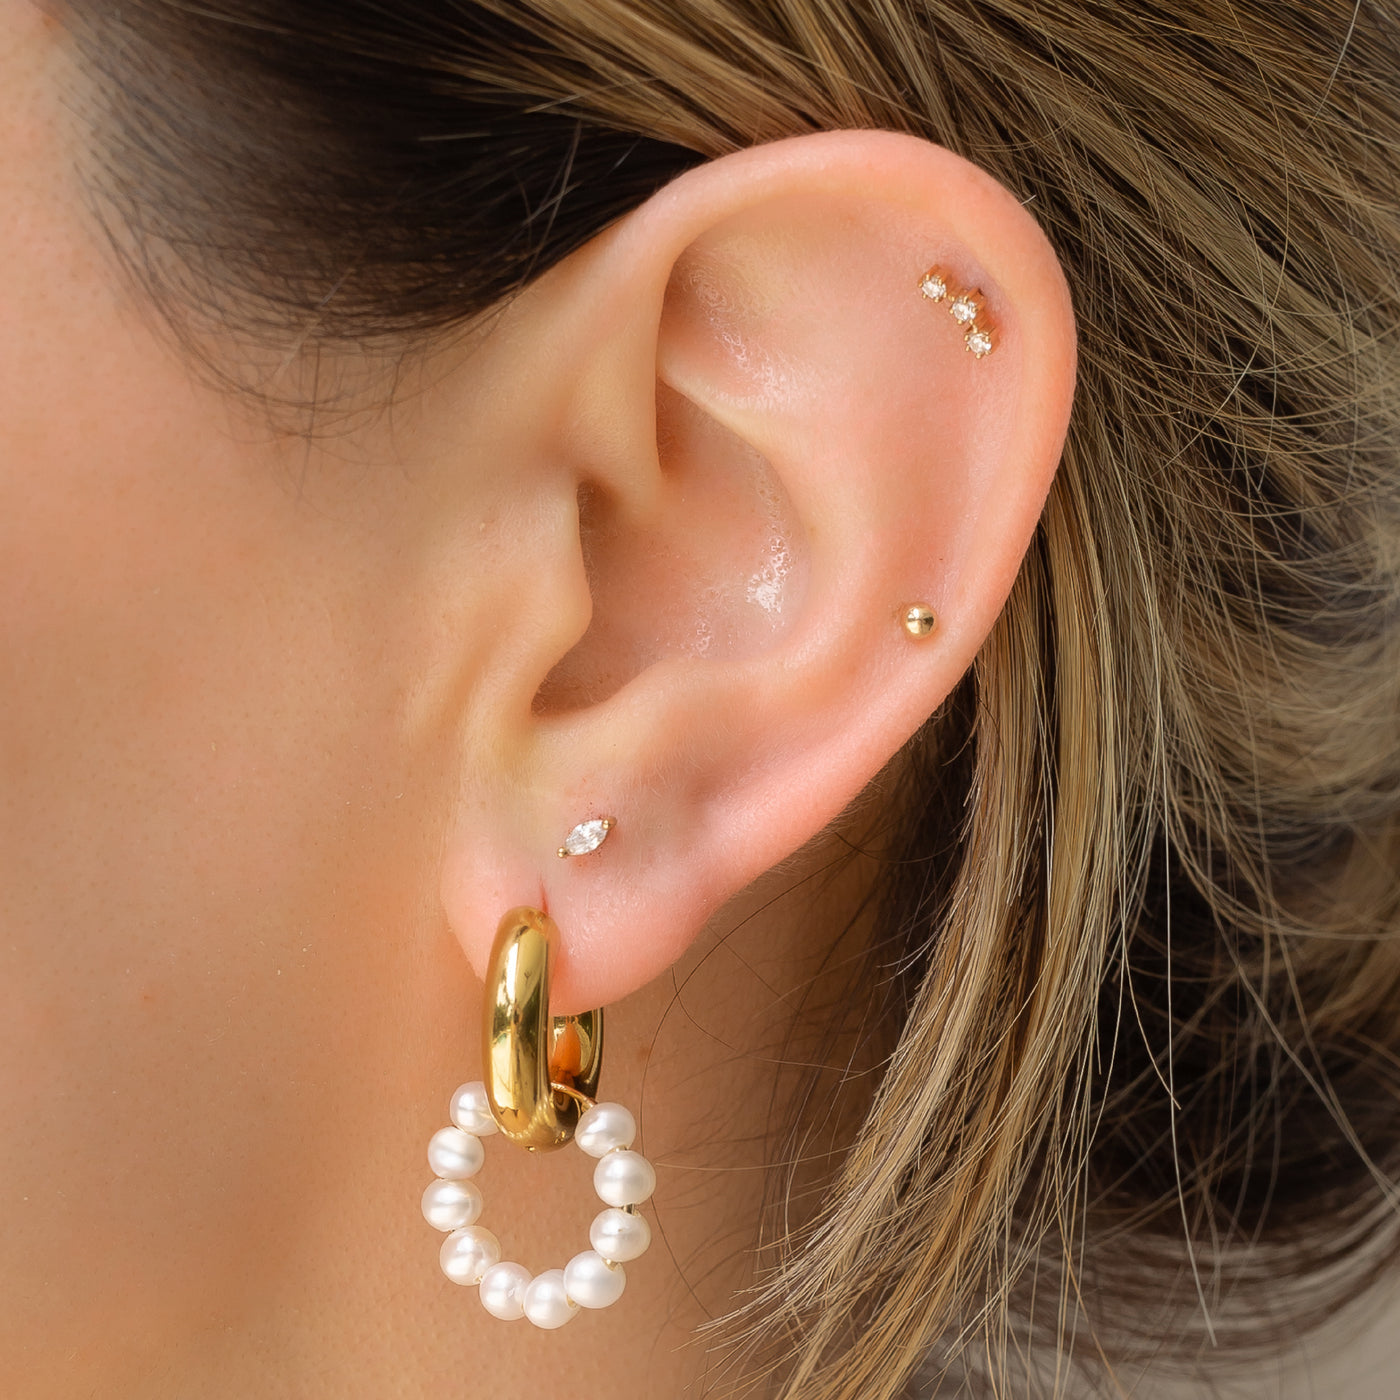 ear wearing gold huggie earrings and pearl hoops